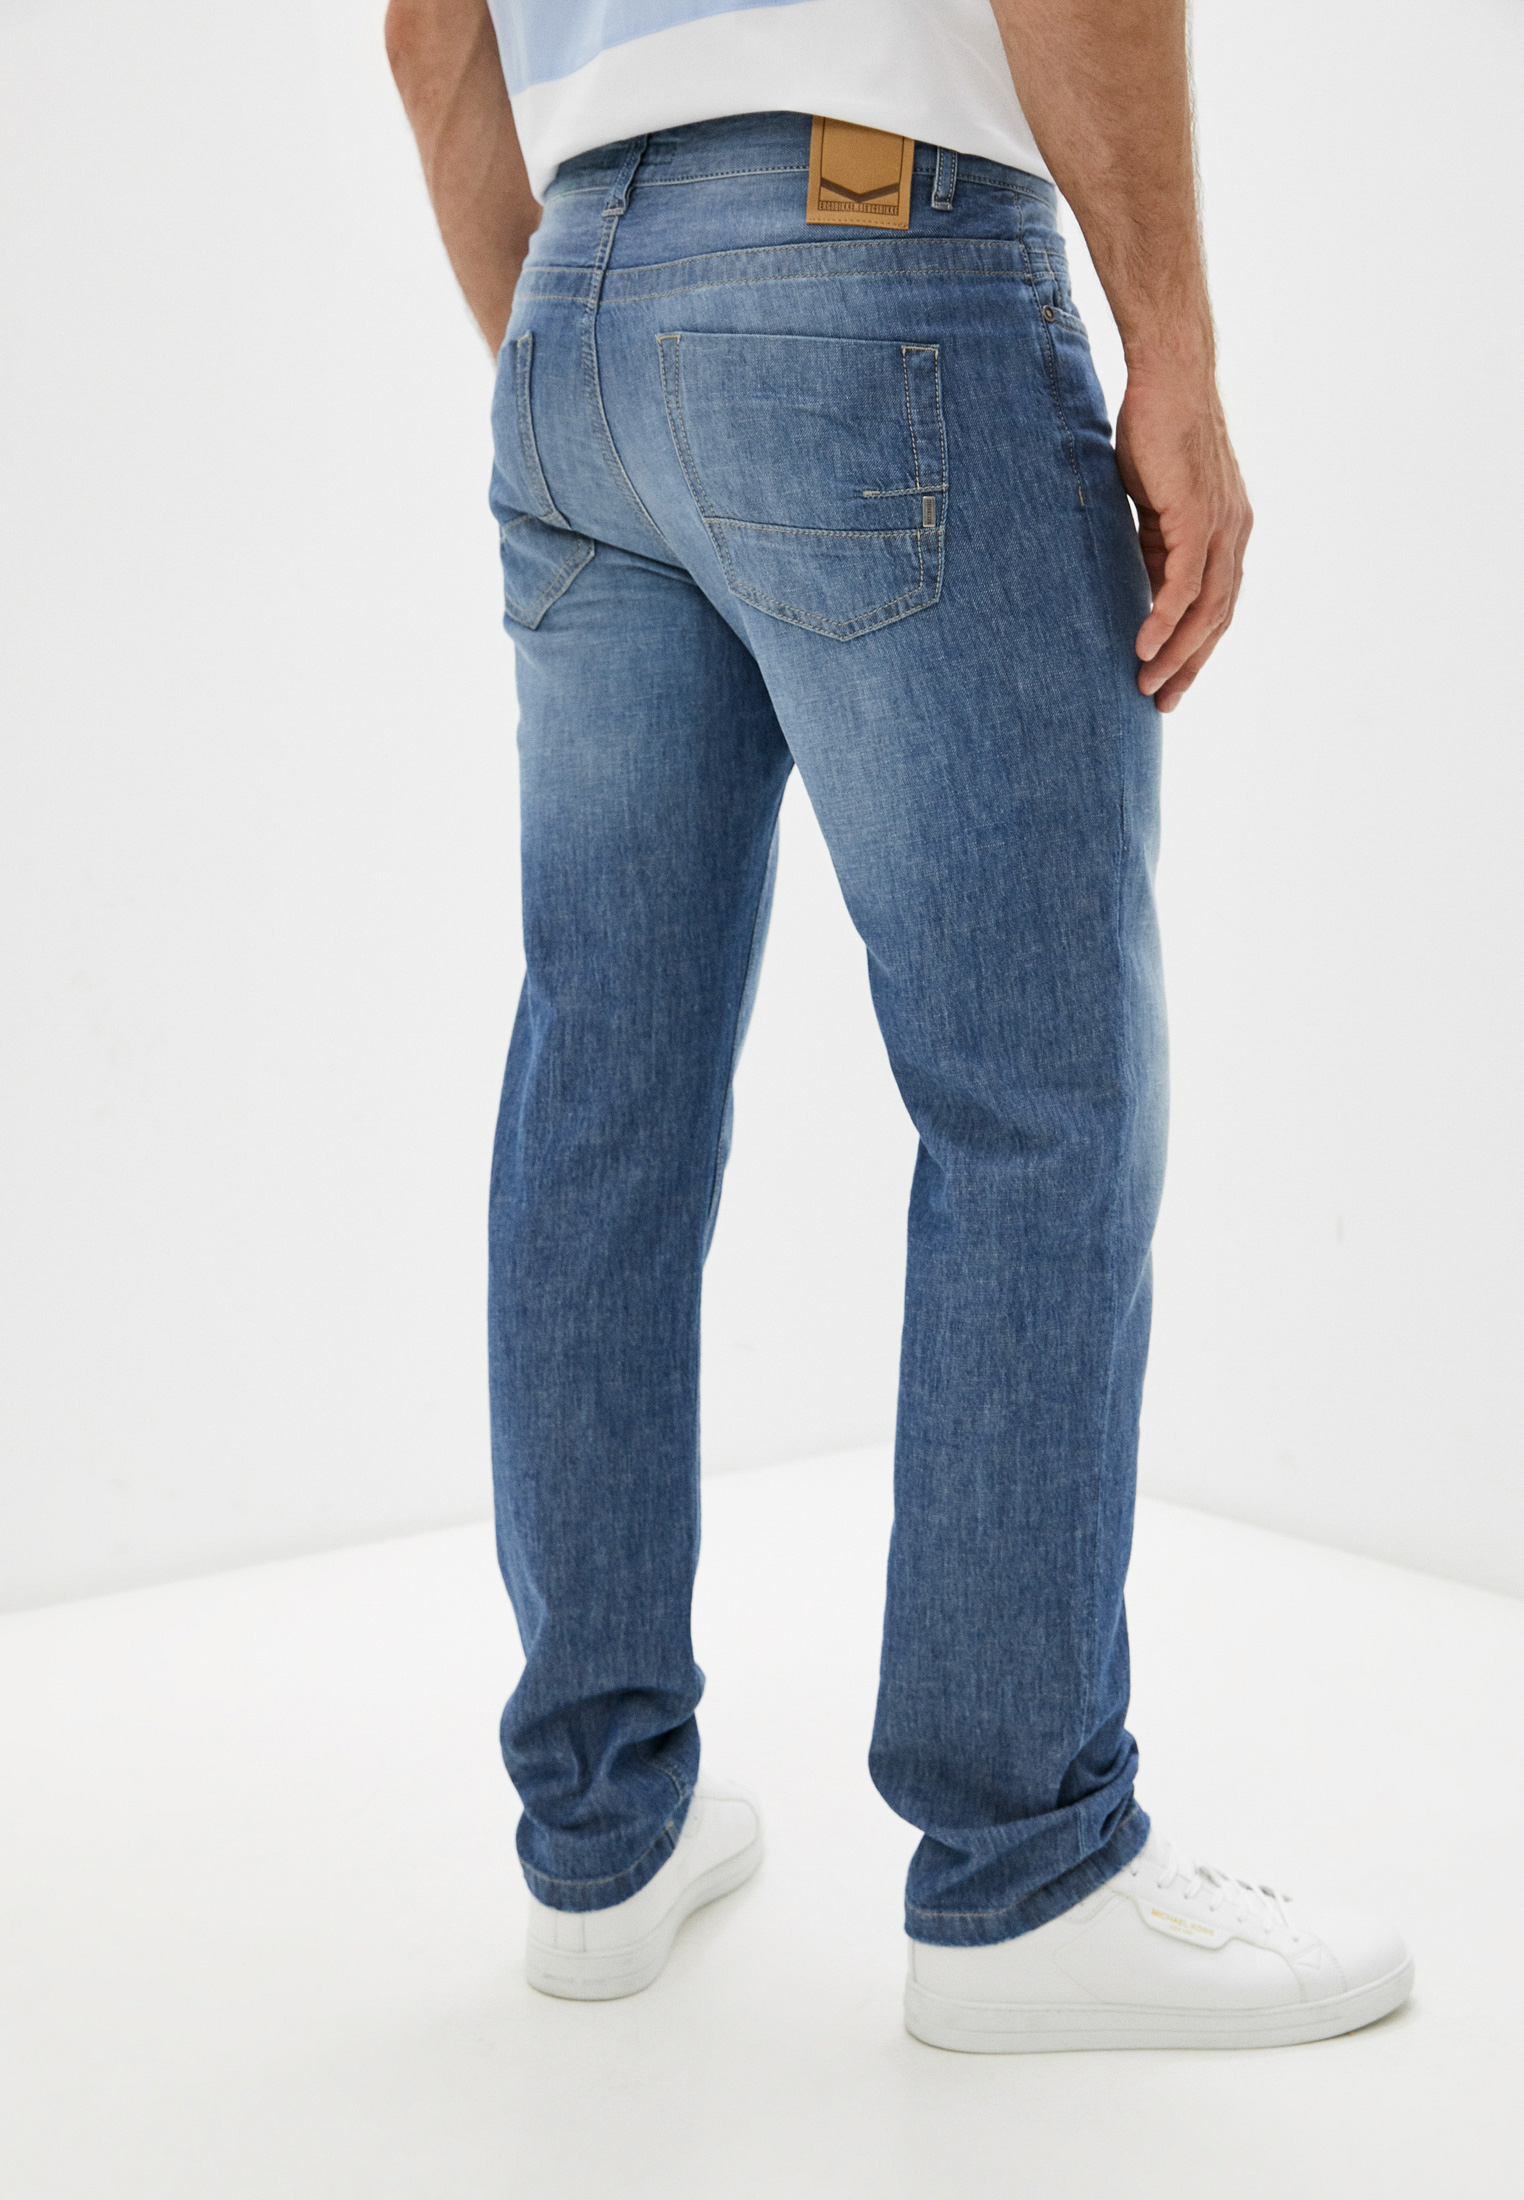 Мужские прямые джинсы Bikkembergs (Биккембергс) C Q 102 00 T 9765: изображение 4